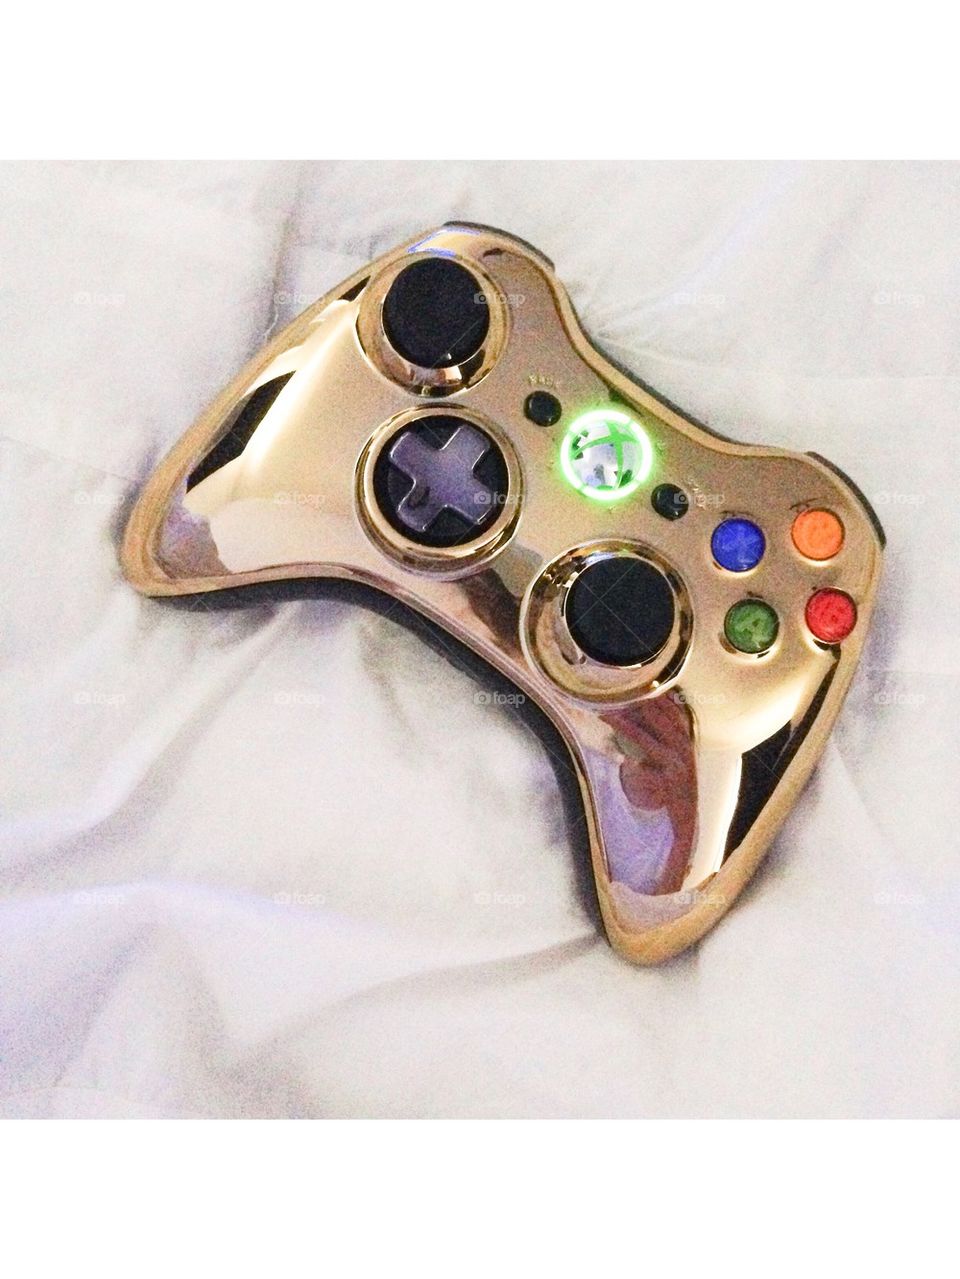 Golden Xbox Controller 